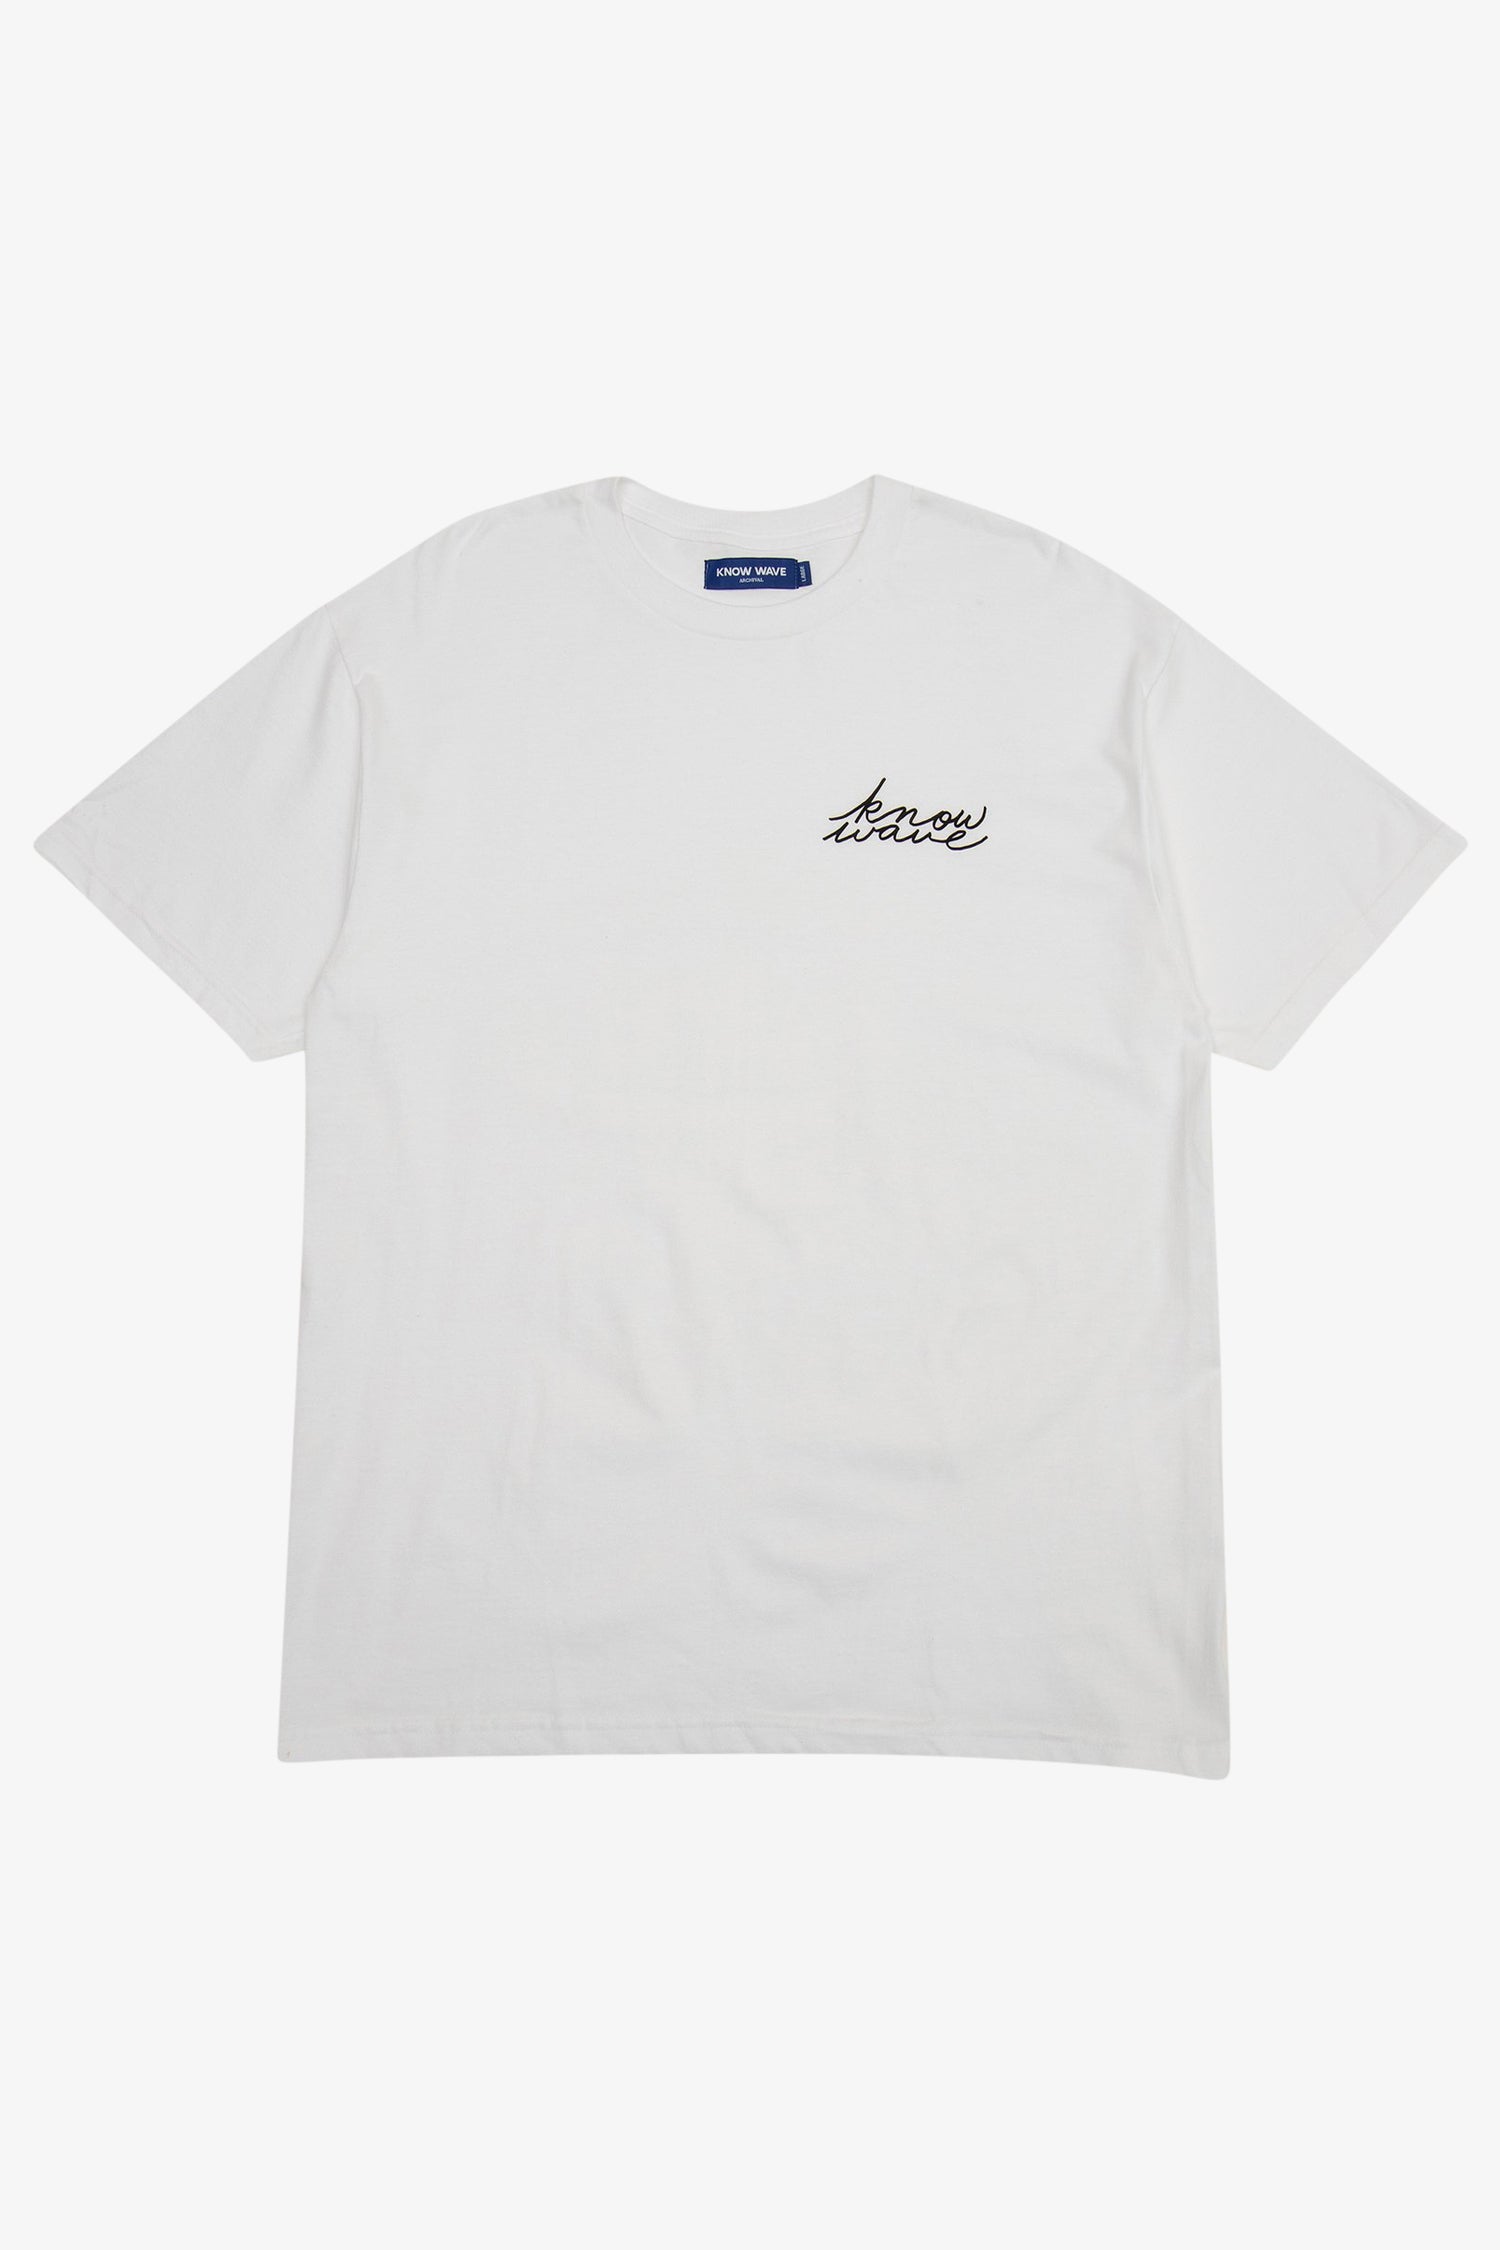 Selectshop FRAME - KNOW WAVE Signature T-Shirt T-Shirt Dubai